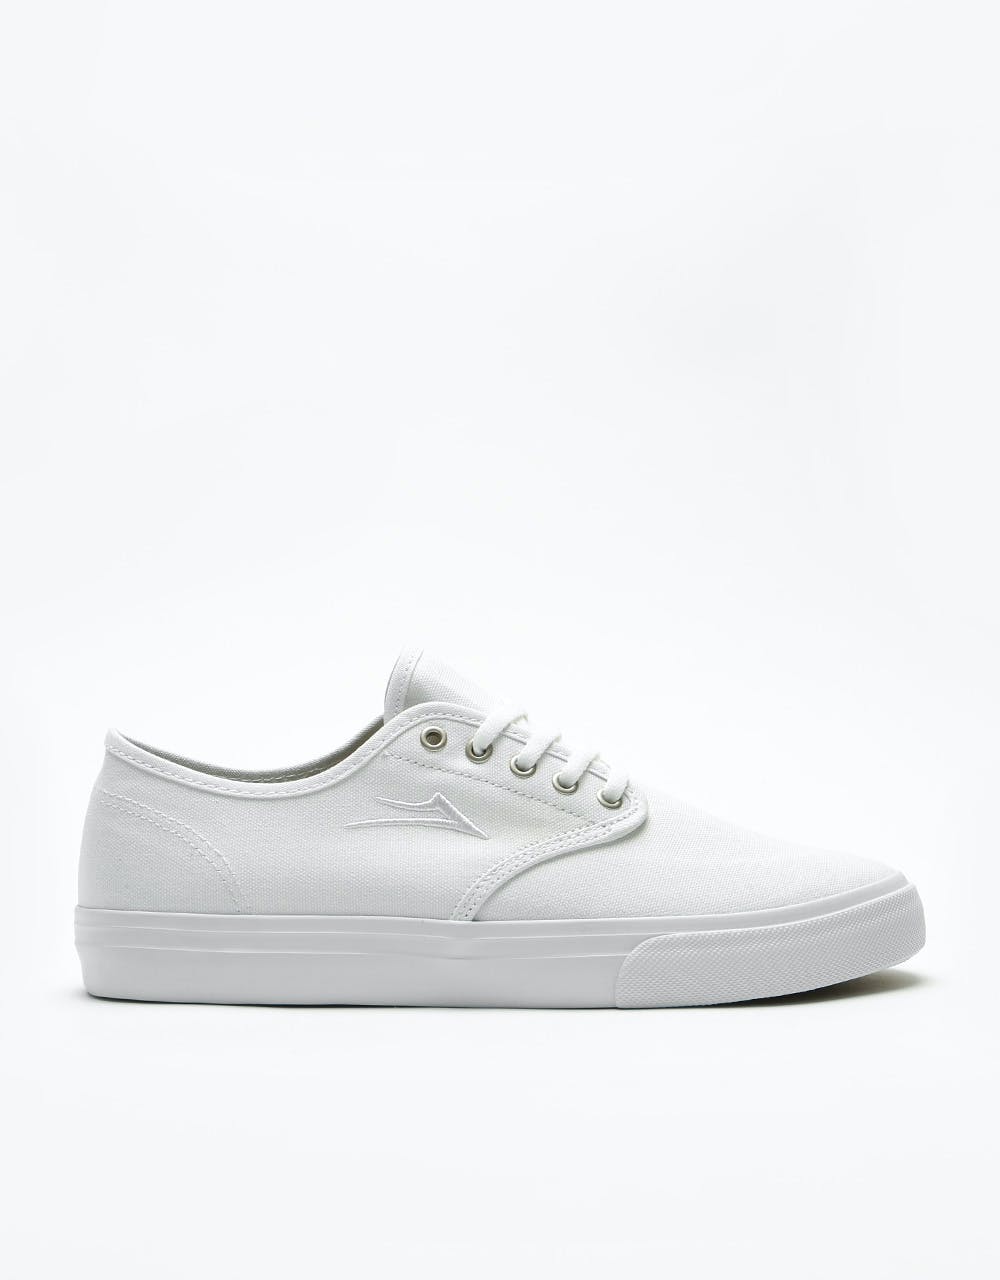 Lakai Oxford Skate Shoes - White Canvas